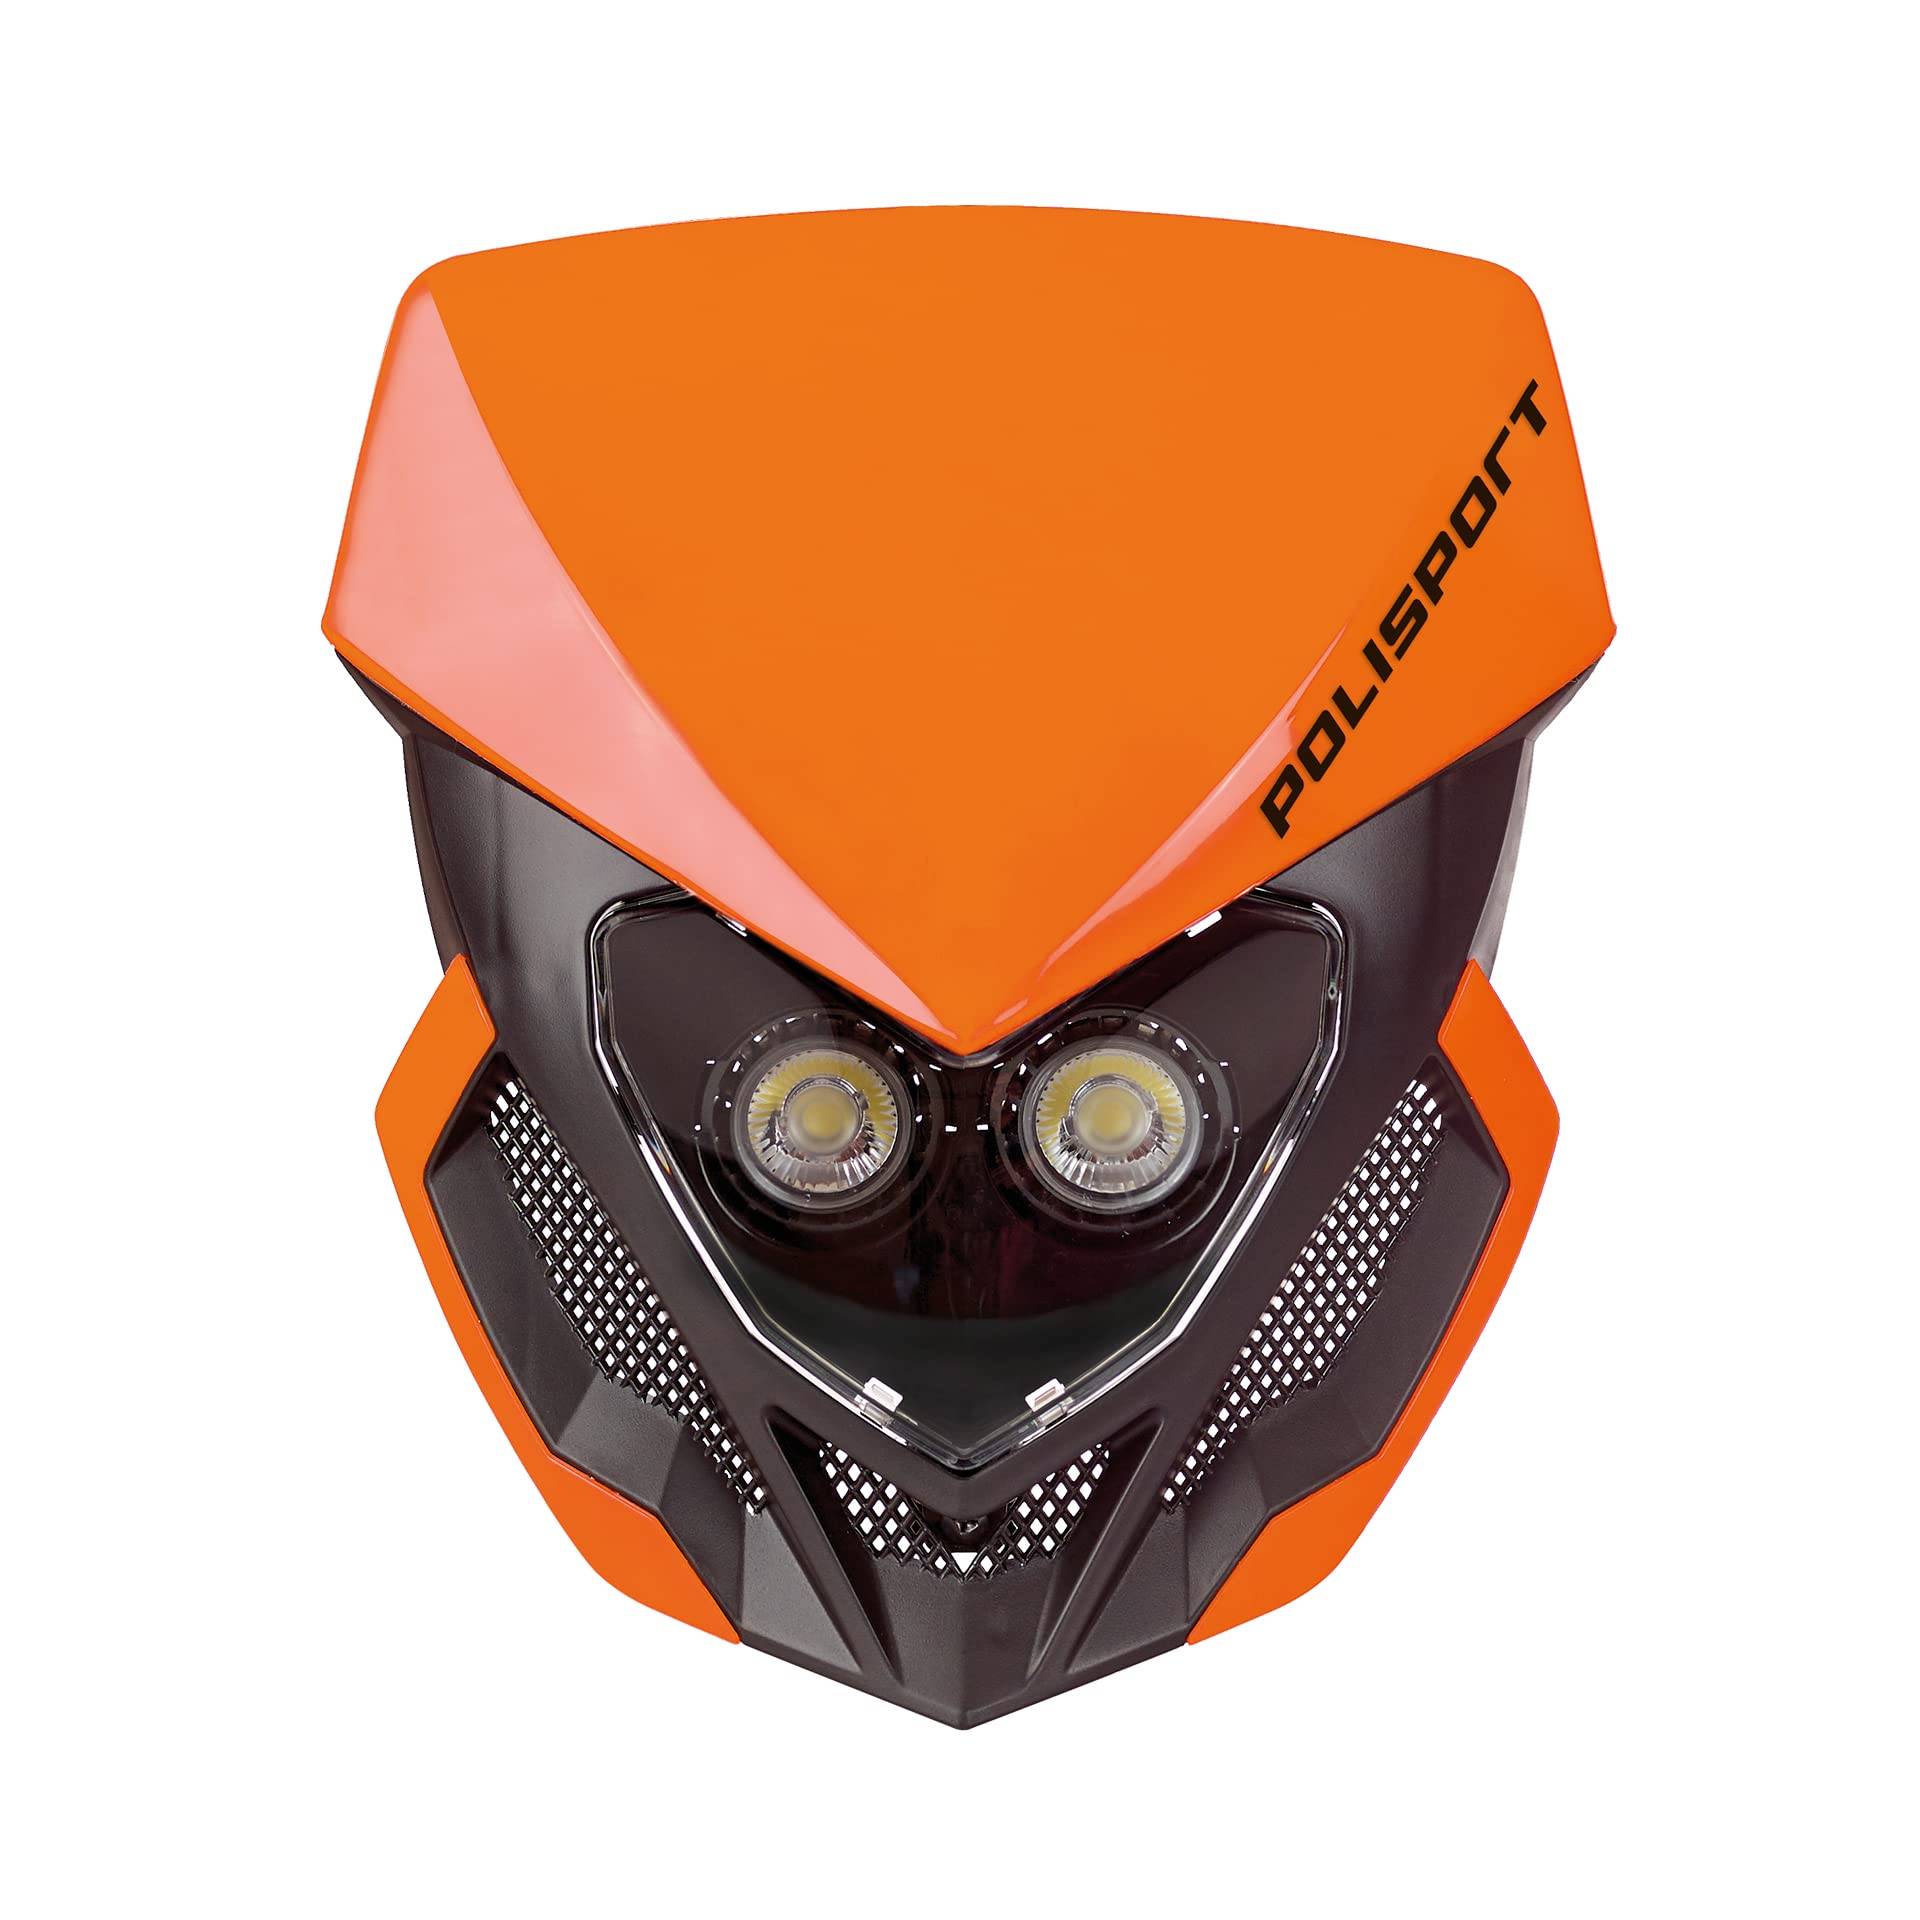 Polisport 8668800003 - Akkubetriebener LOOKOS EVO-Scheinwerfer aus Polypropylen mit LED-Lampe, kompatibel mit allen Motocross-/Enduro-Modellen in Farbe orange/schwarz von Polisport